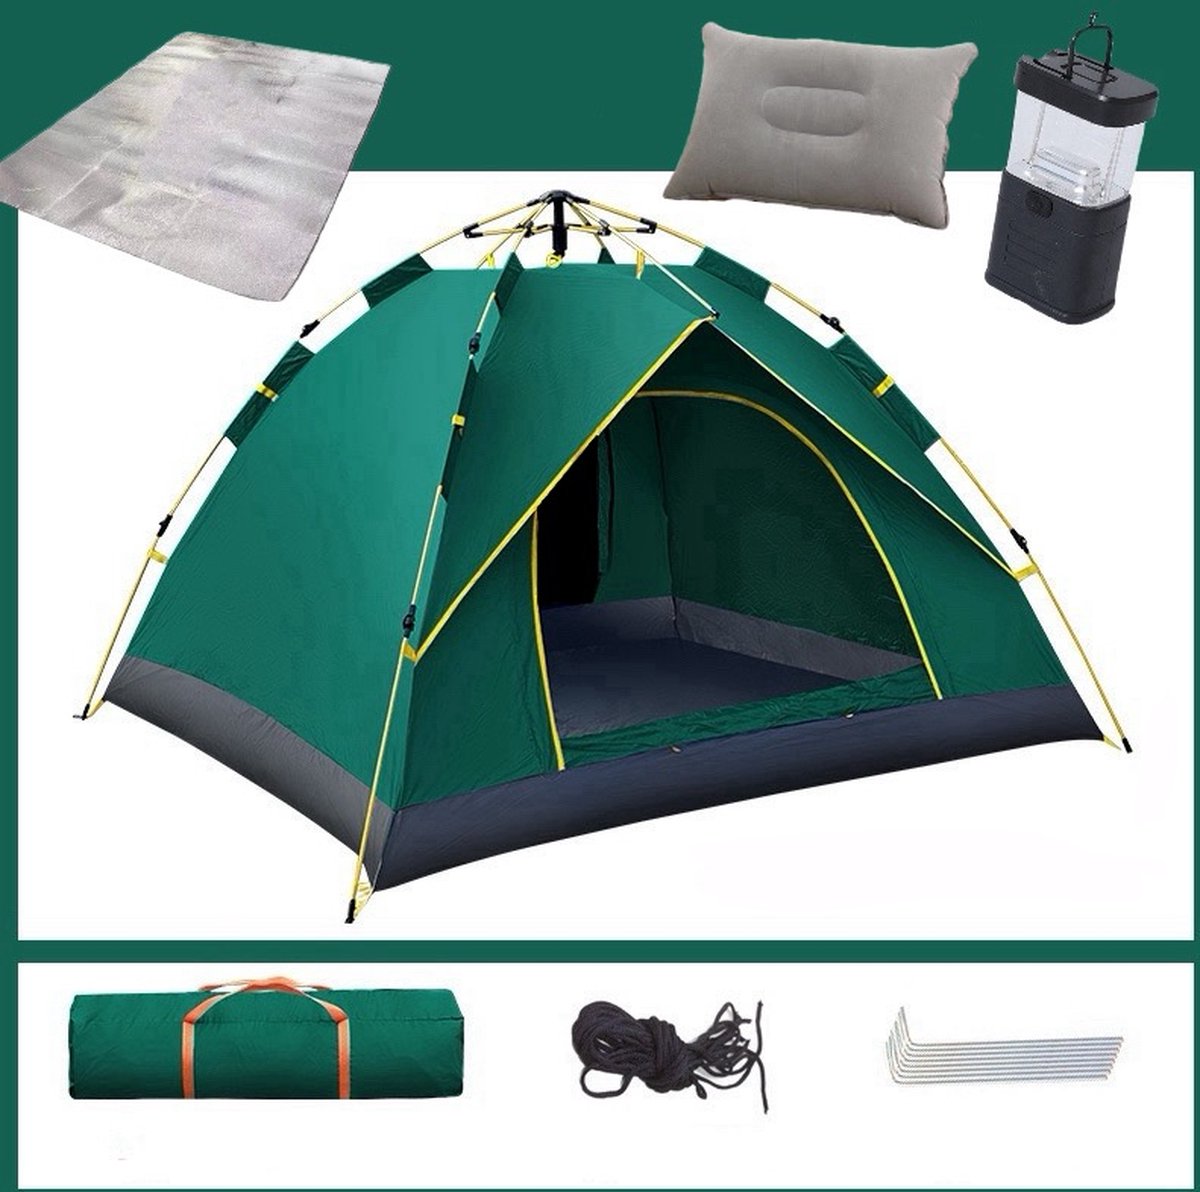 Campingtent - Pop-up tent - Kampeertent - Automatische tent - Opvouwbaar - Binnen 1 minuut opzetten - 200x145x125 cm - Donkergroen - Inclusief isolatiemat, winddicht touw, grondnagels, kussen en camping lamp - Merkloos